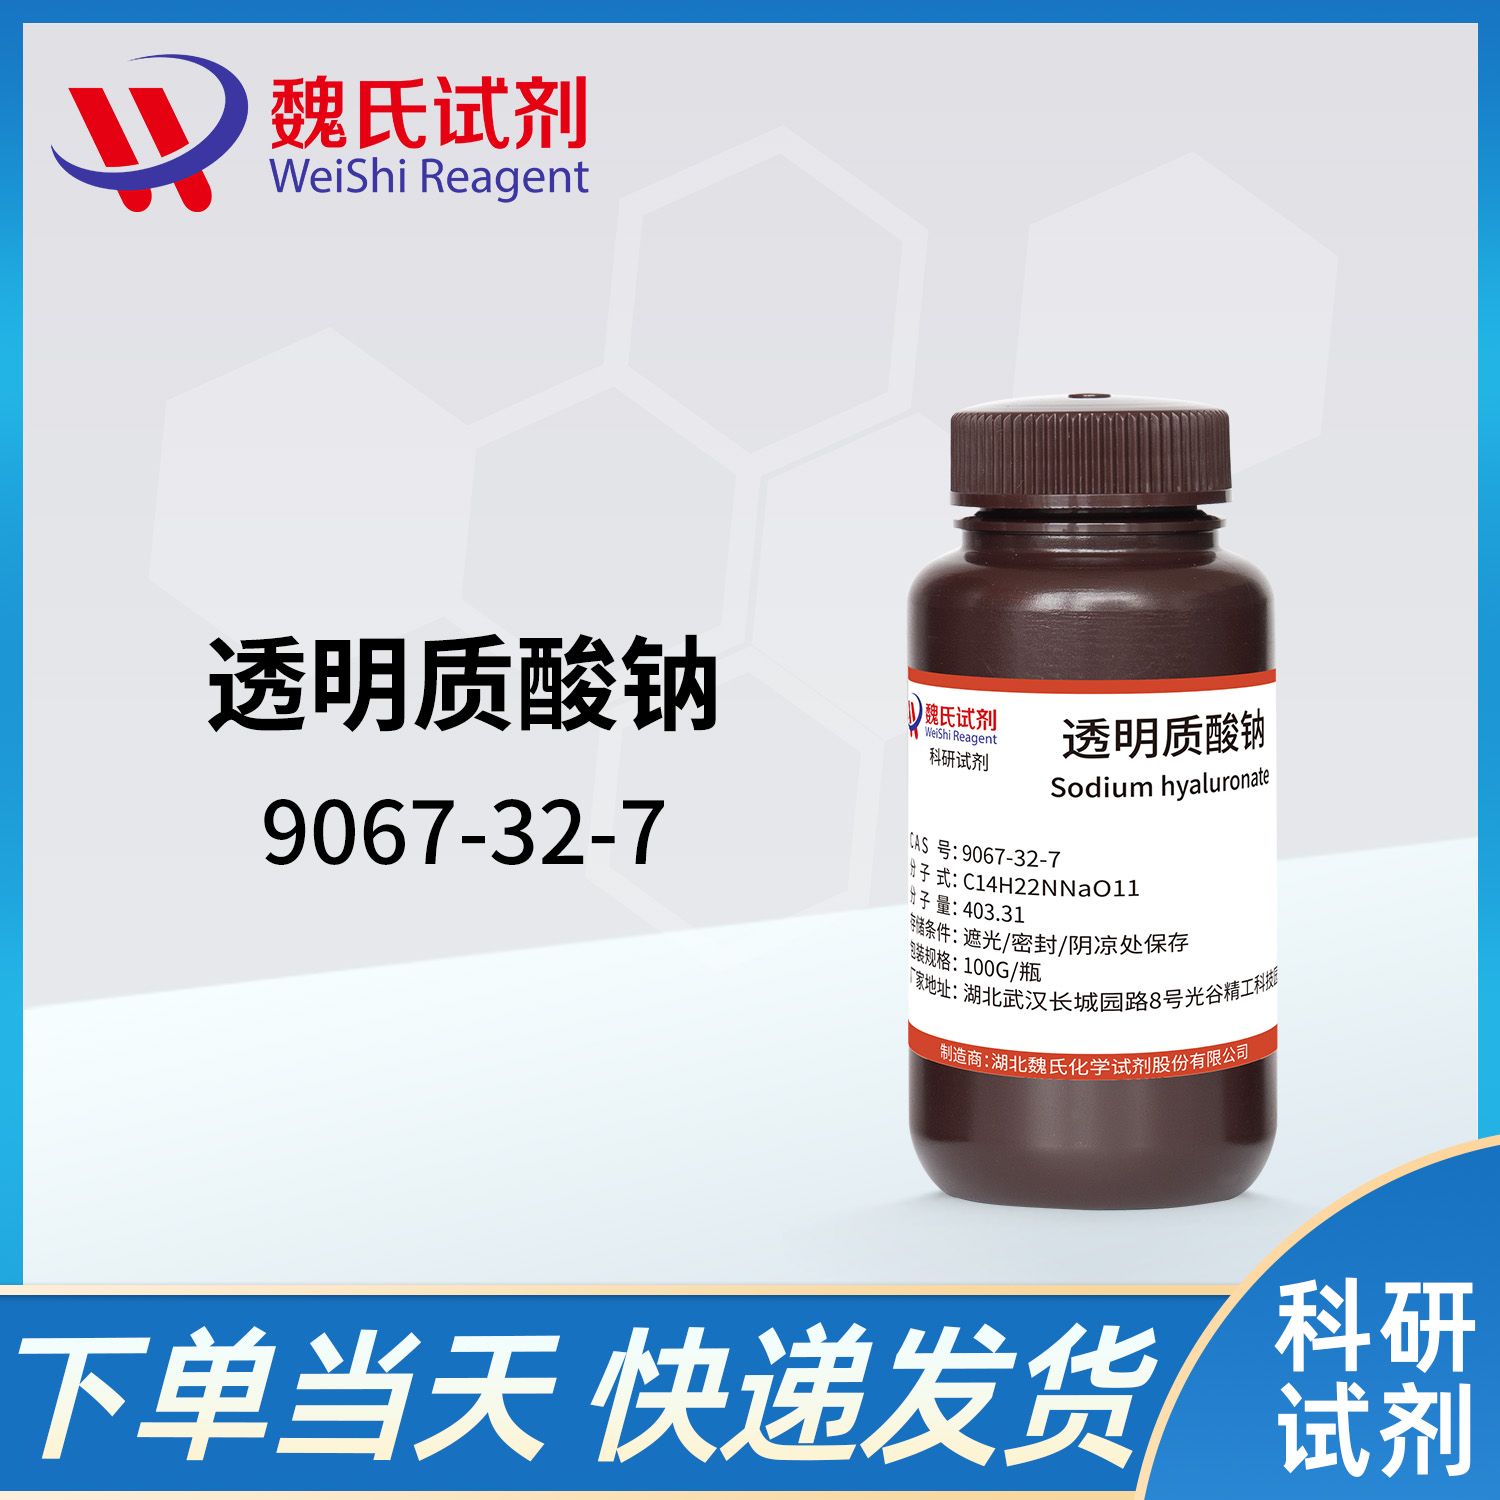 9067-32-7 /透明质酸钠/Sodium hyaluronate